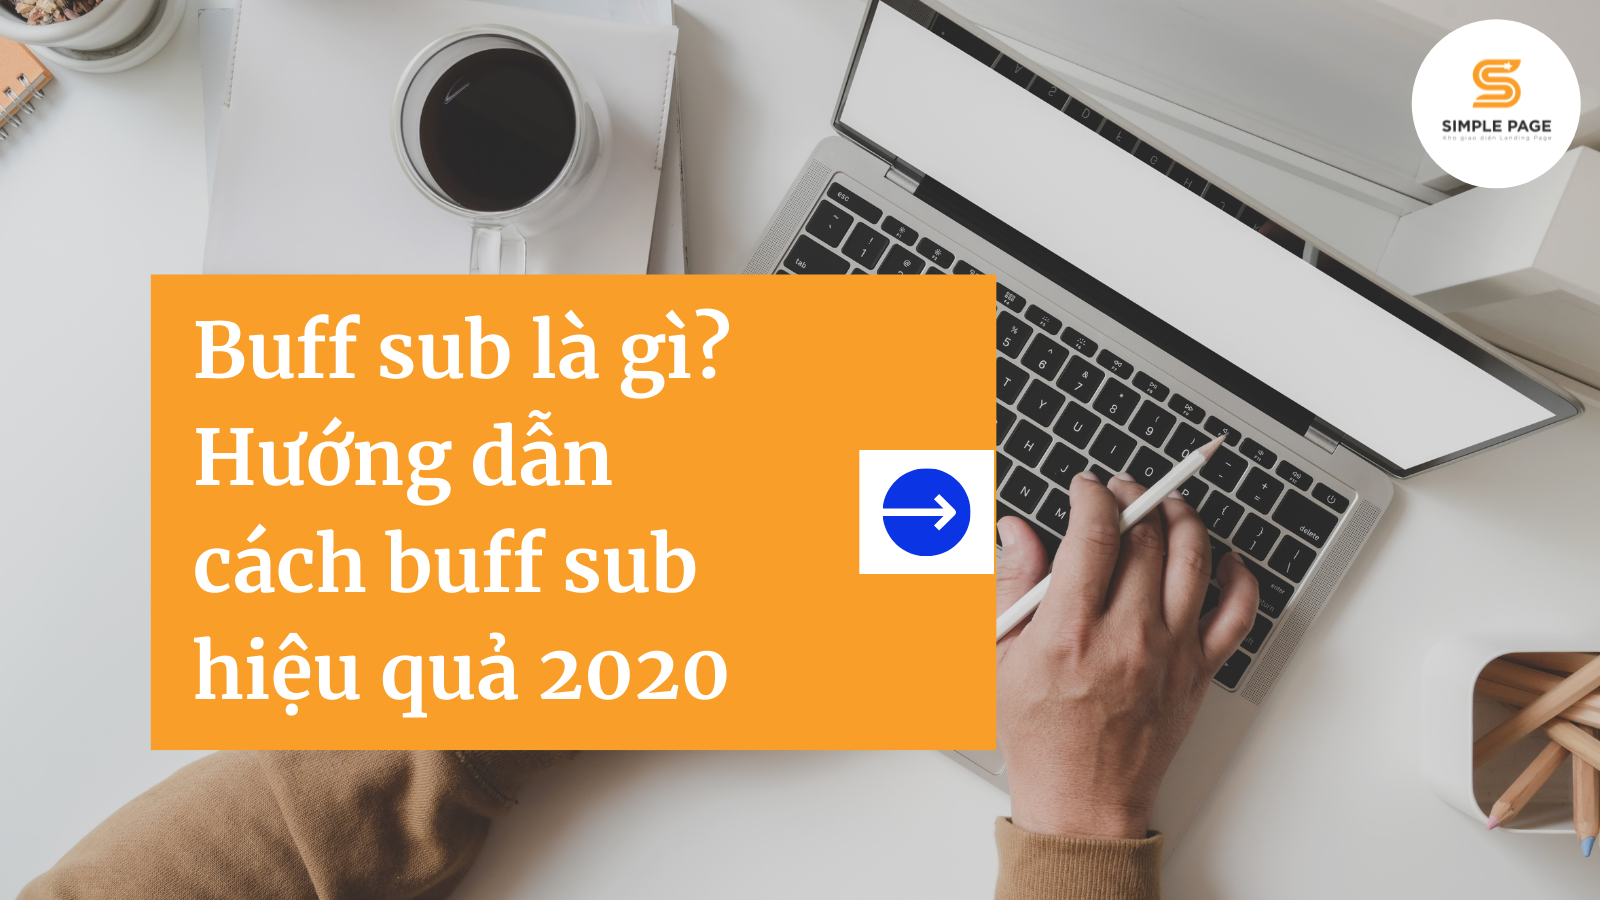 Buff sub là gì? Hướng dẫn cách buff sub hiệu quả 2021